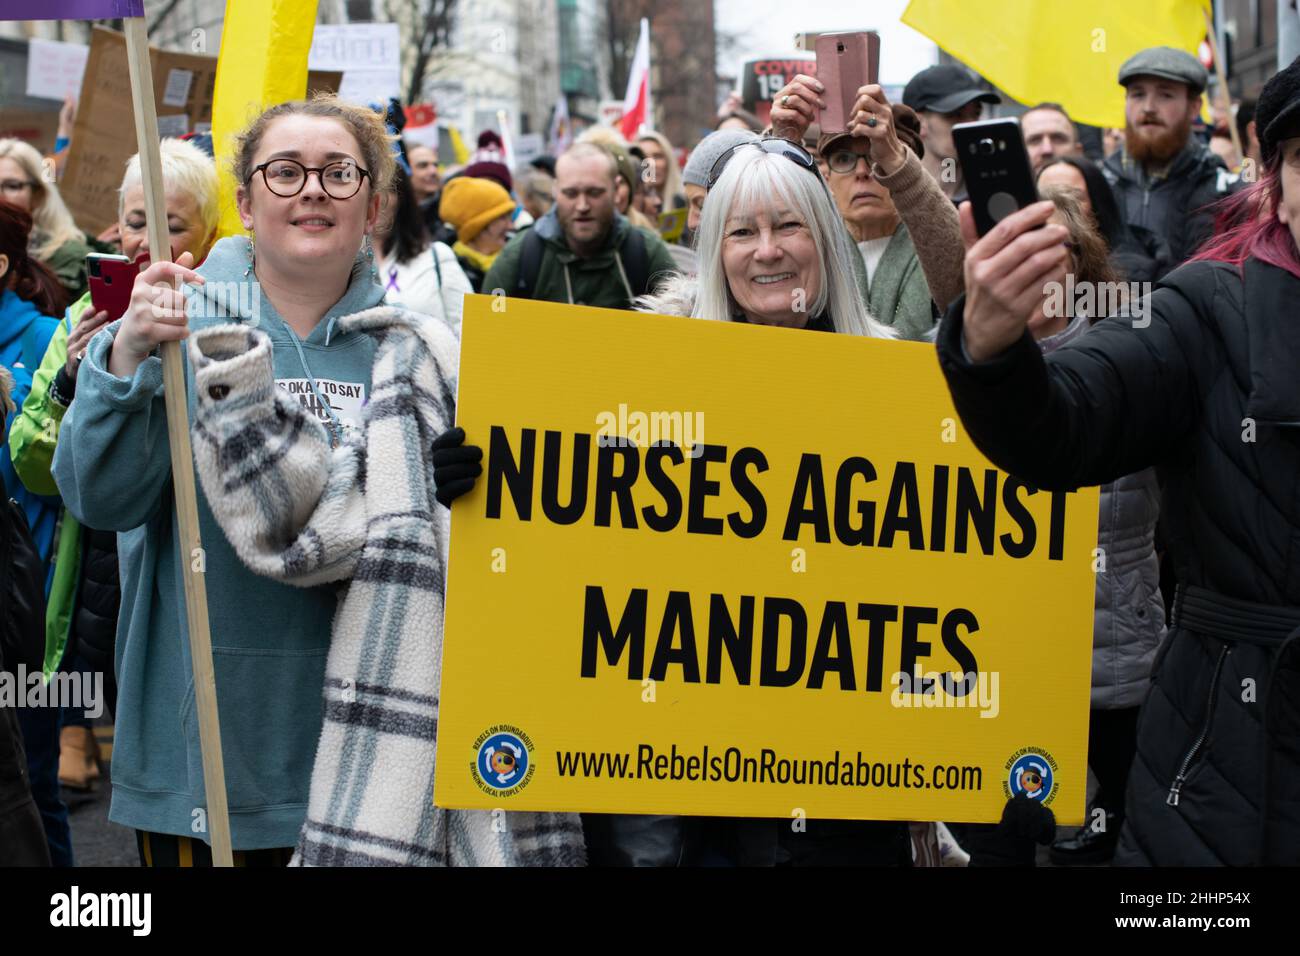 Anti-Vax-Protest Deansgate. Protestierende halten Unterzeichentext Krankenschwestern gegen Mandate. Manchester, Großbritannien Stockfoto